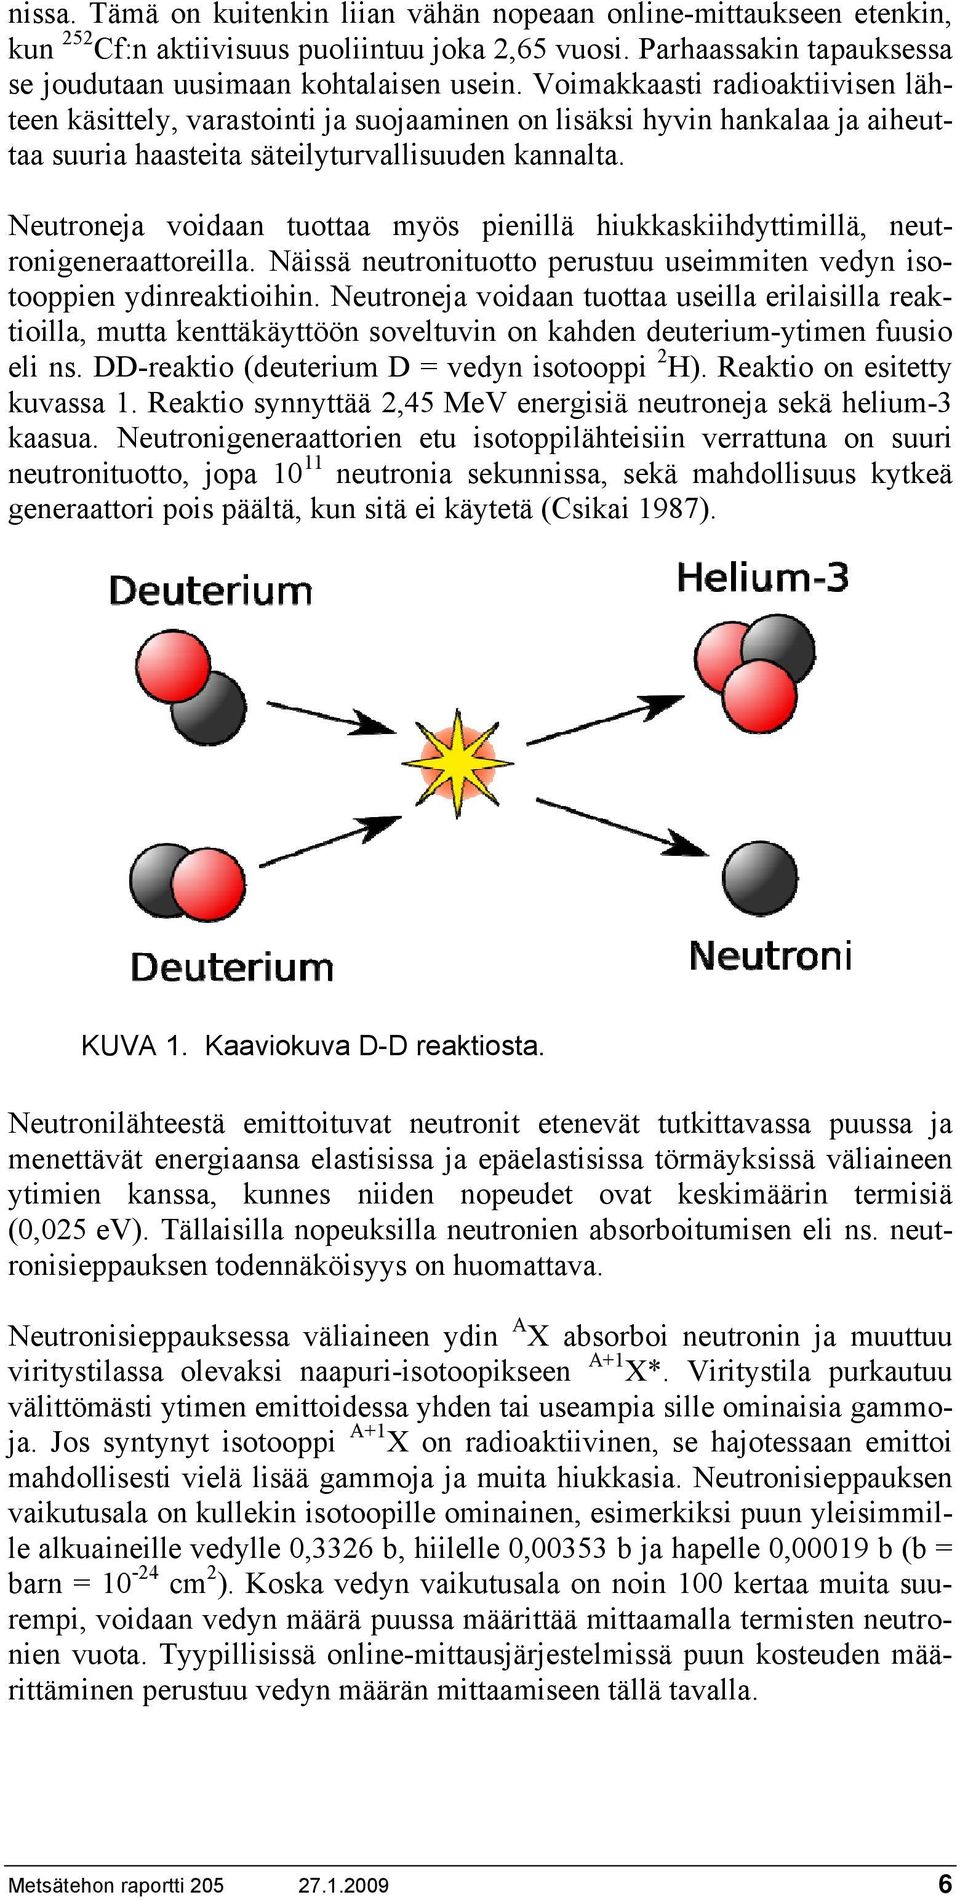 Neutroneja voidaan tuottaa myös pienillä hiukkaskiihdyttimillä, neutronigeneraattoreilla. Näissä neutronituotto perustuu useimmiten vedyn isotooppien ydinreaktioihin.